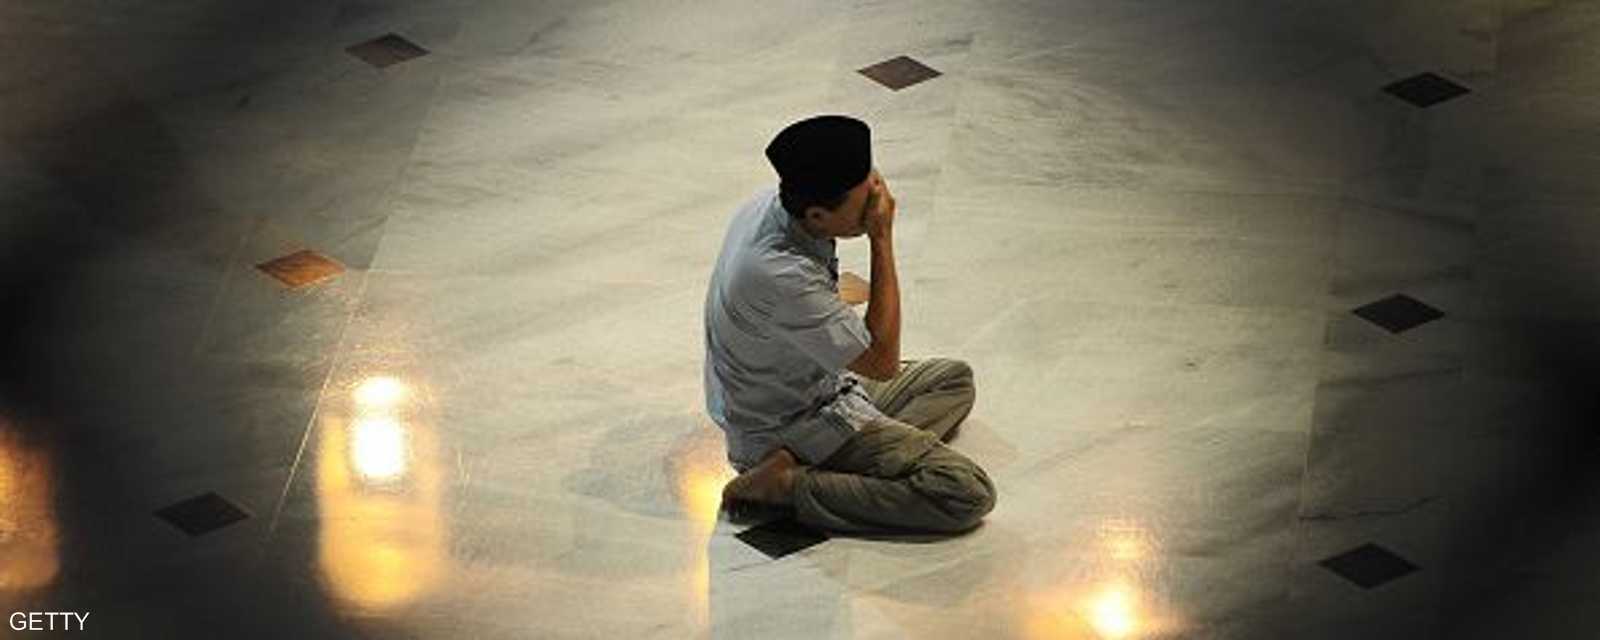 لحظة خشوع في أحد مساجد أندونيسيا